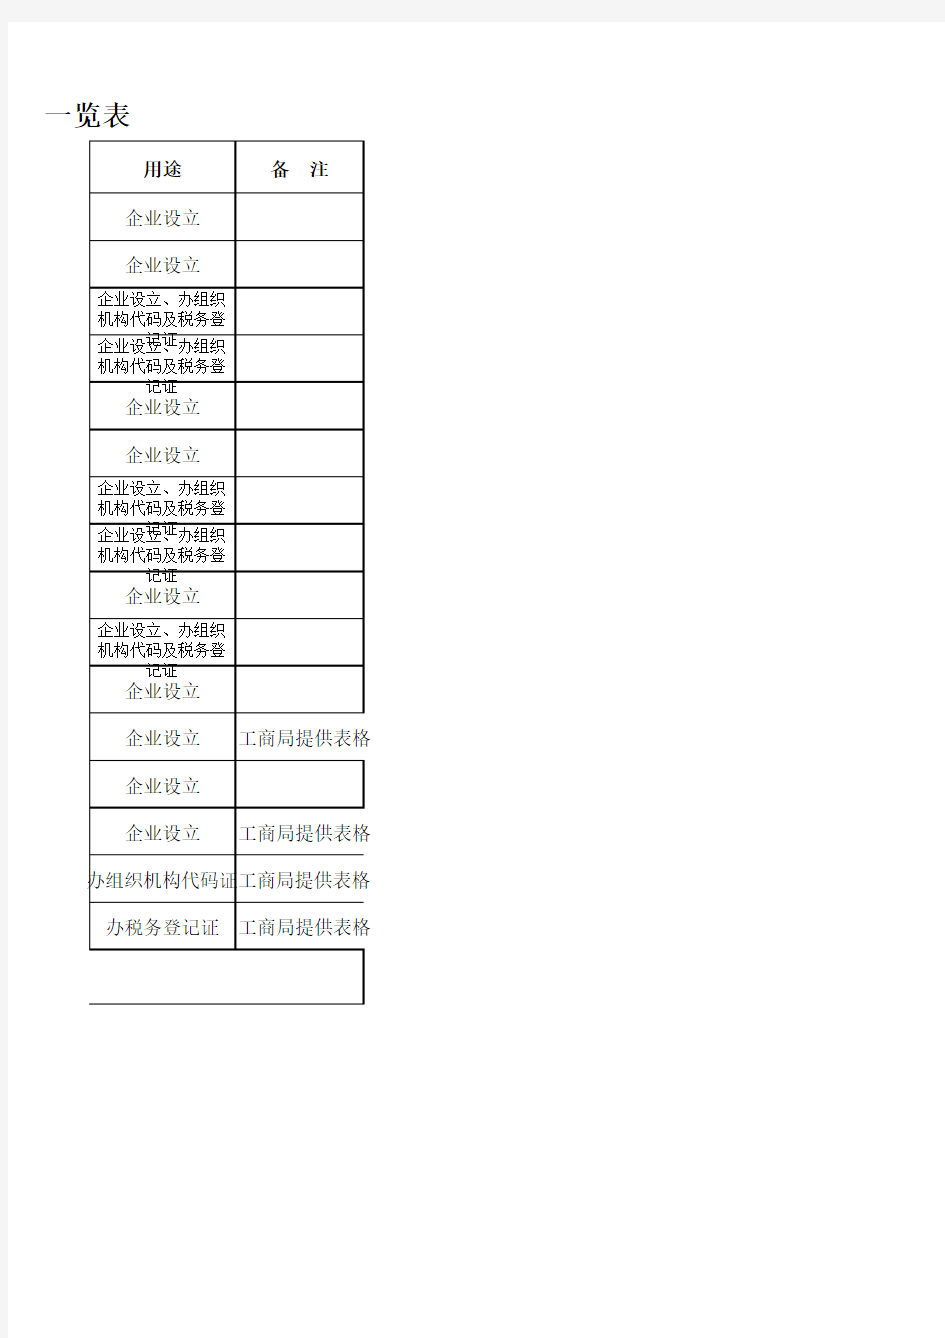 重庆市工商局设立子公司办理手续所需资料一览表